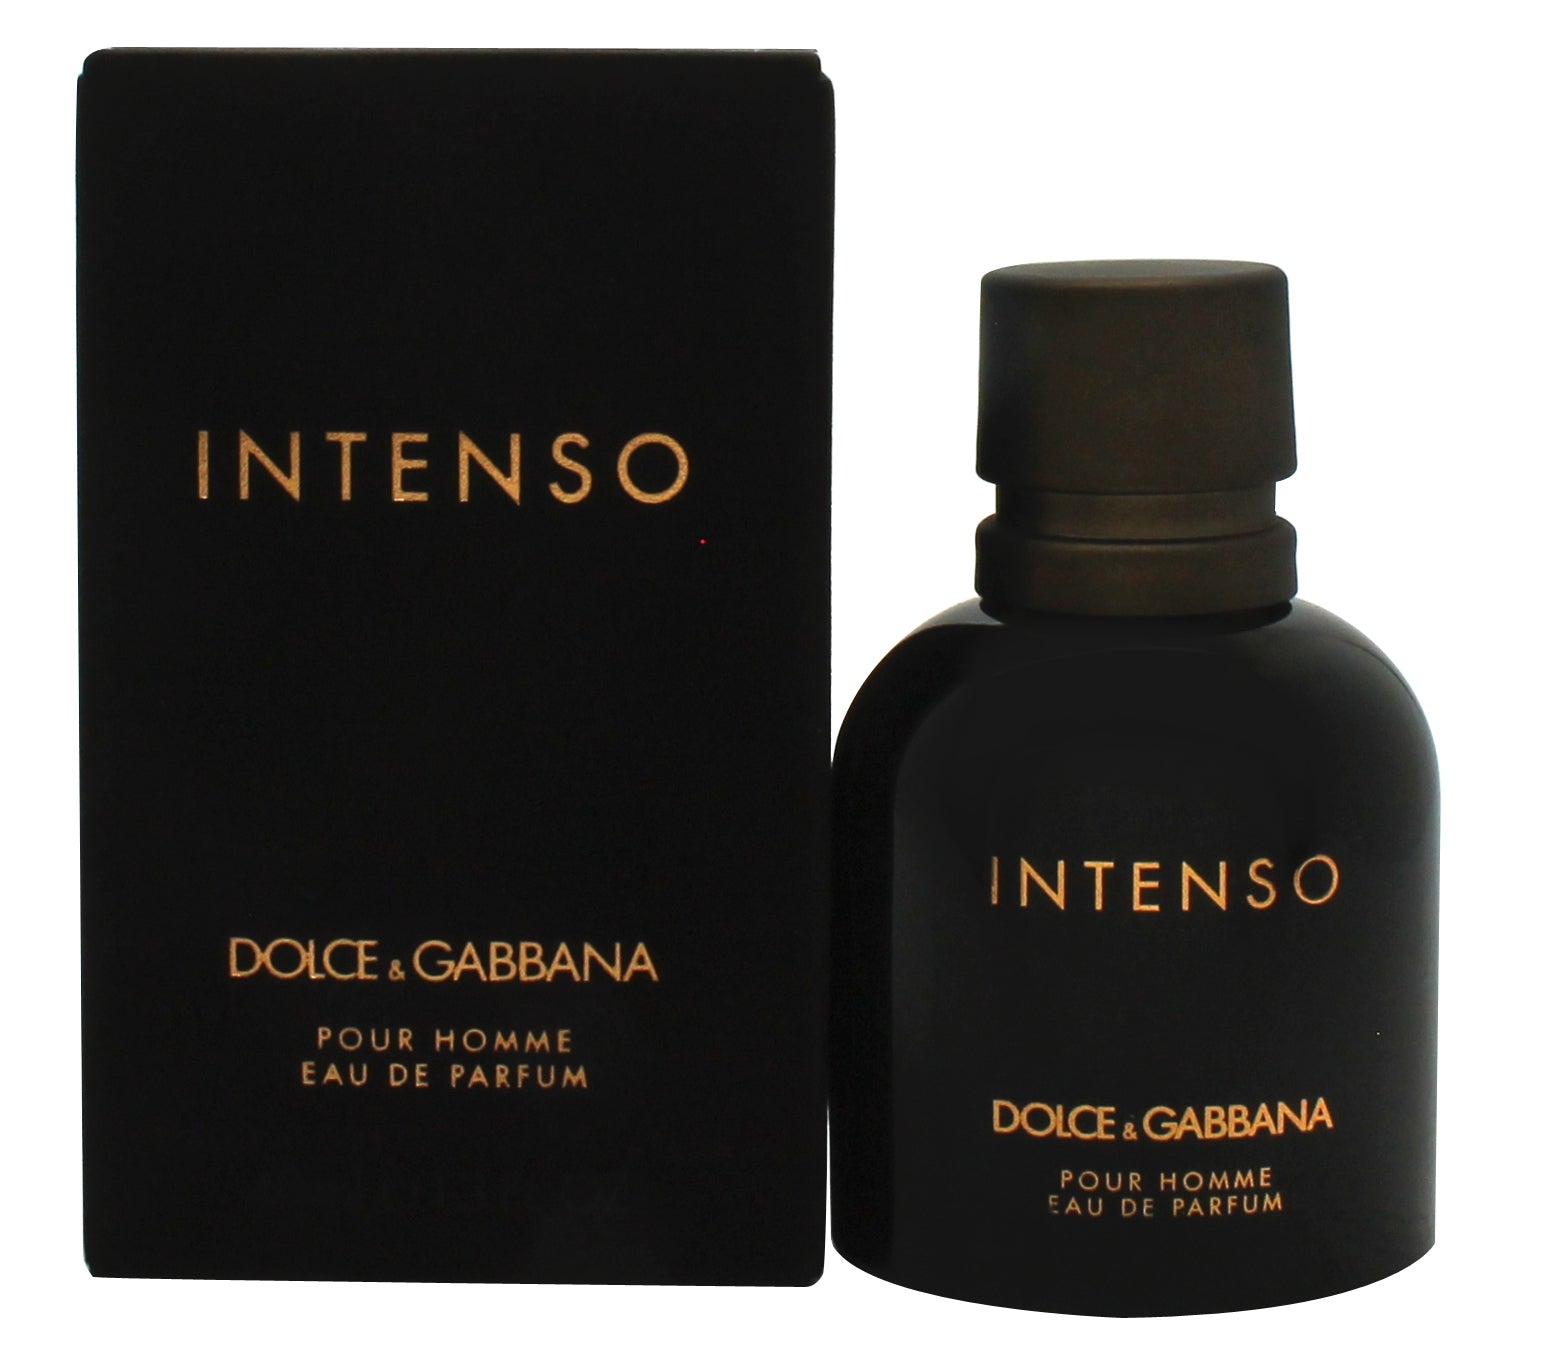 View Dolce Gabbana Pour Homme Intenso Eau de Parfum 40ml Sprej information